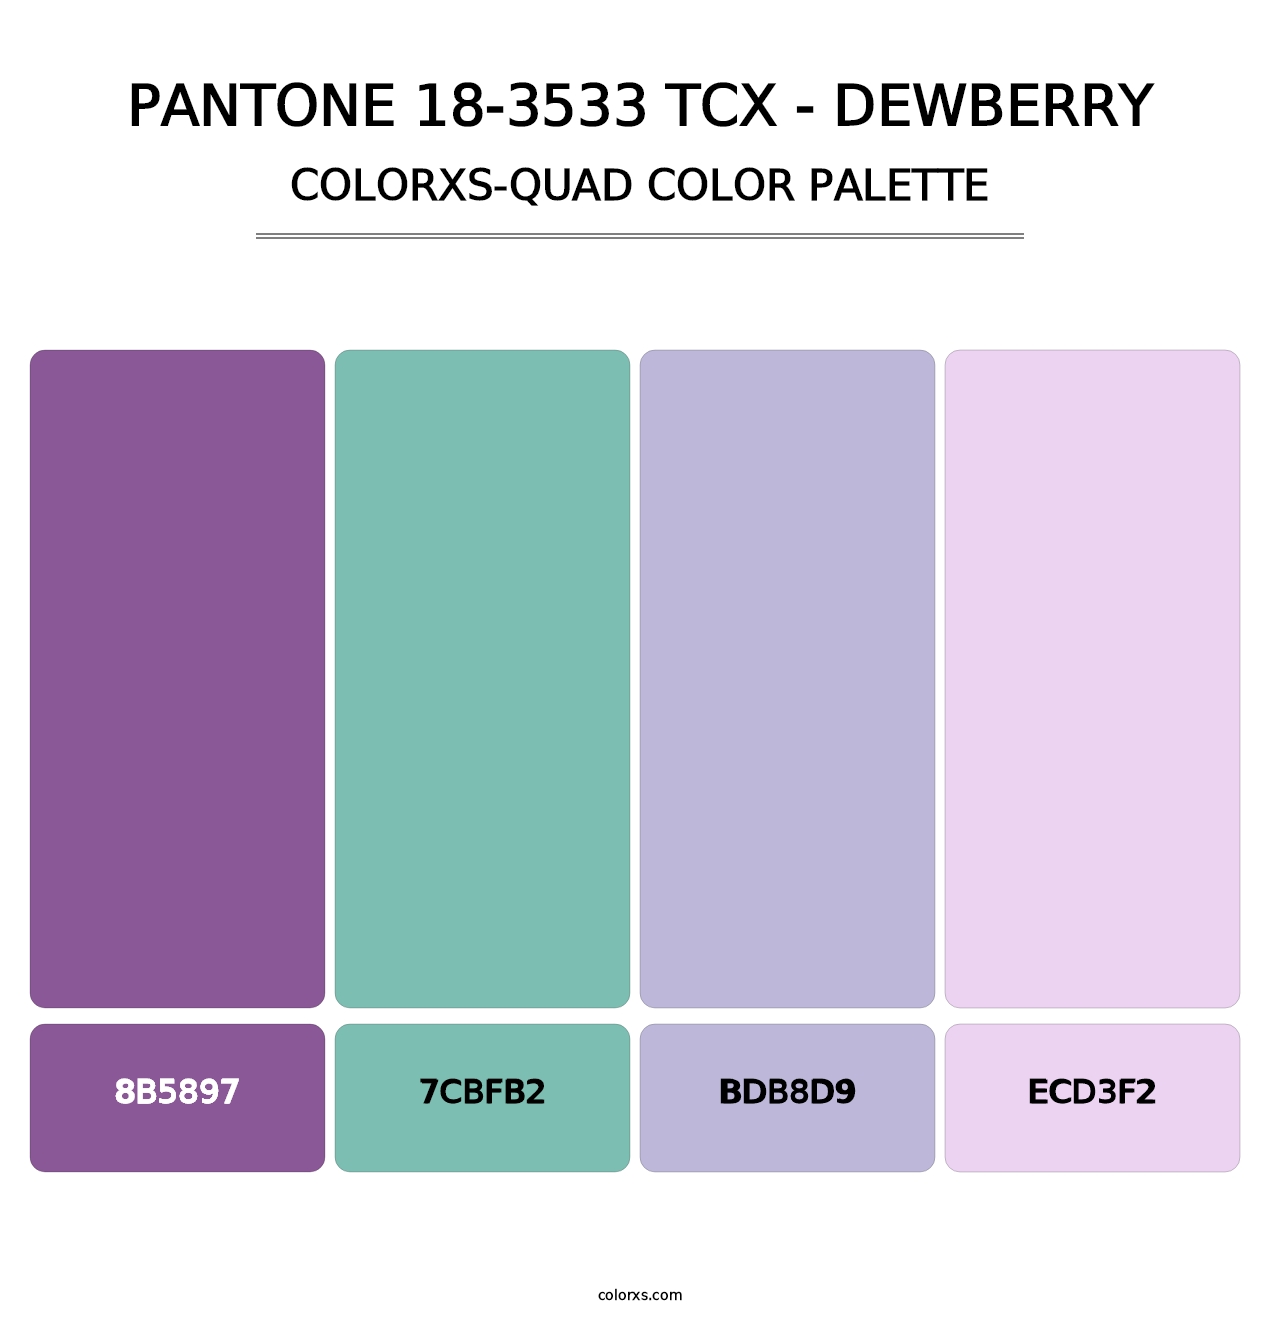 PANTONE 18-3533 TCX - Dewberry - Colorxs Quad Palette